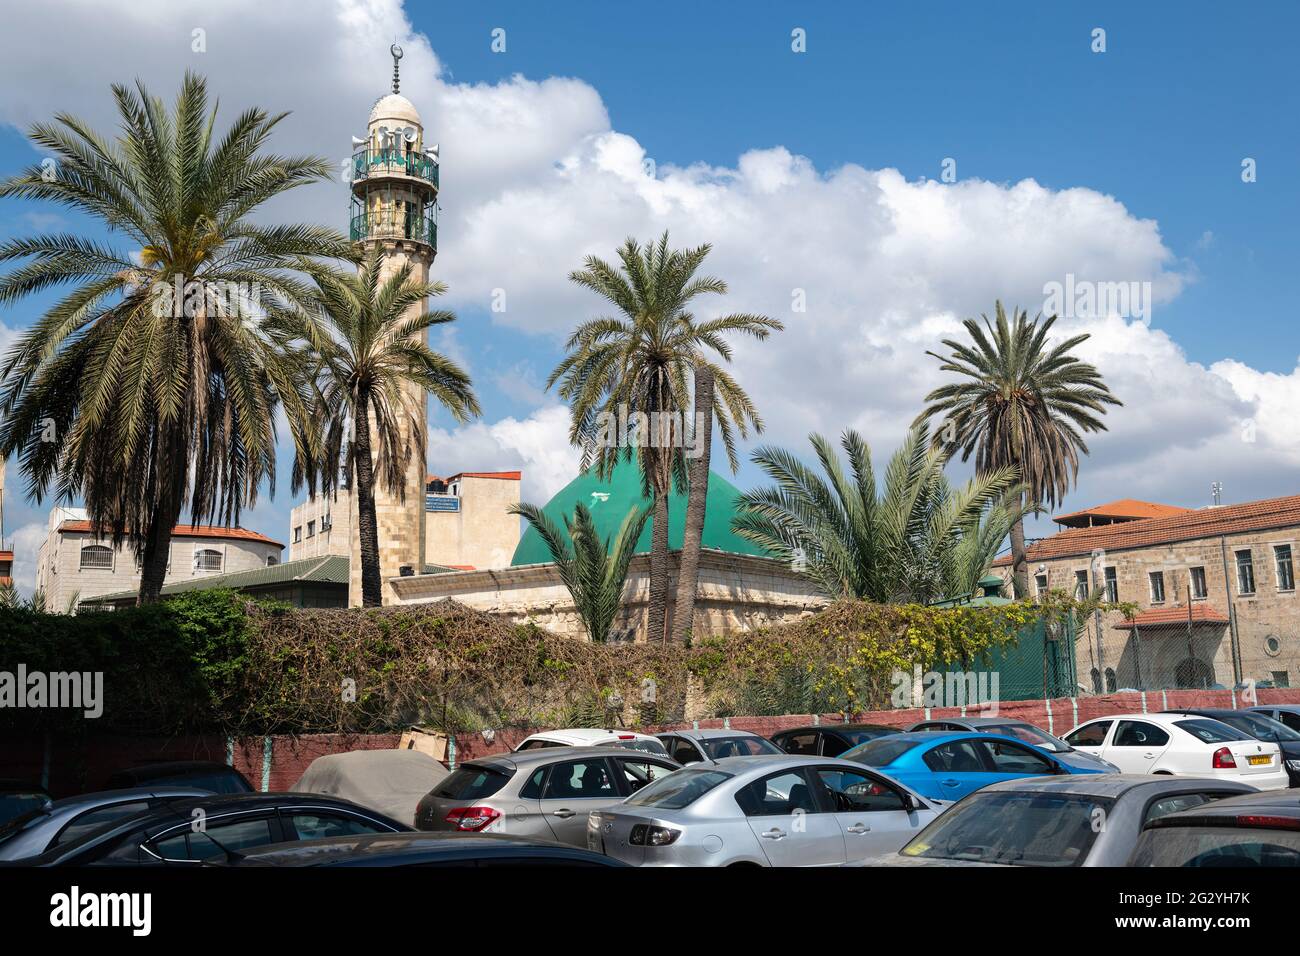 La grande mosquée de Jénine, également connue sous le nom de mosquée Fatima Khatun, est une mosquée historique située à Jénine, dans le nord de la Cisjordanie, en Palestine. Banque D'Images